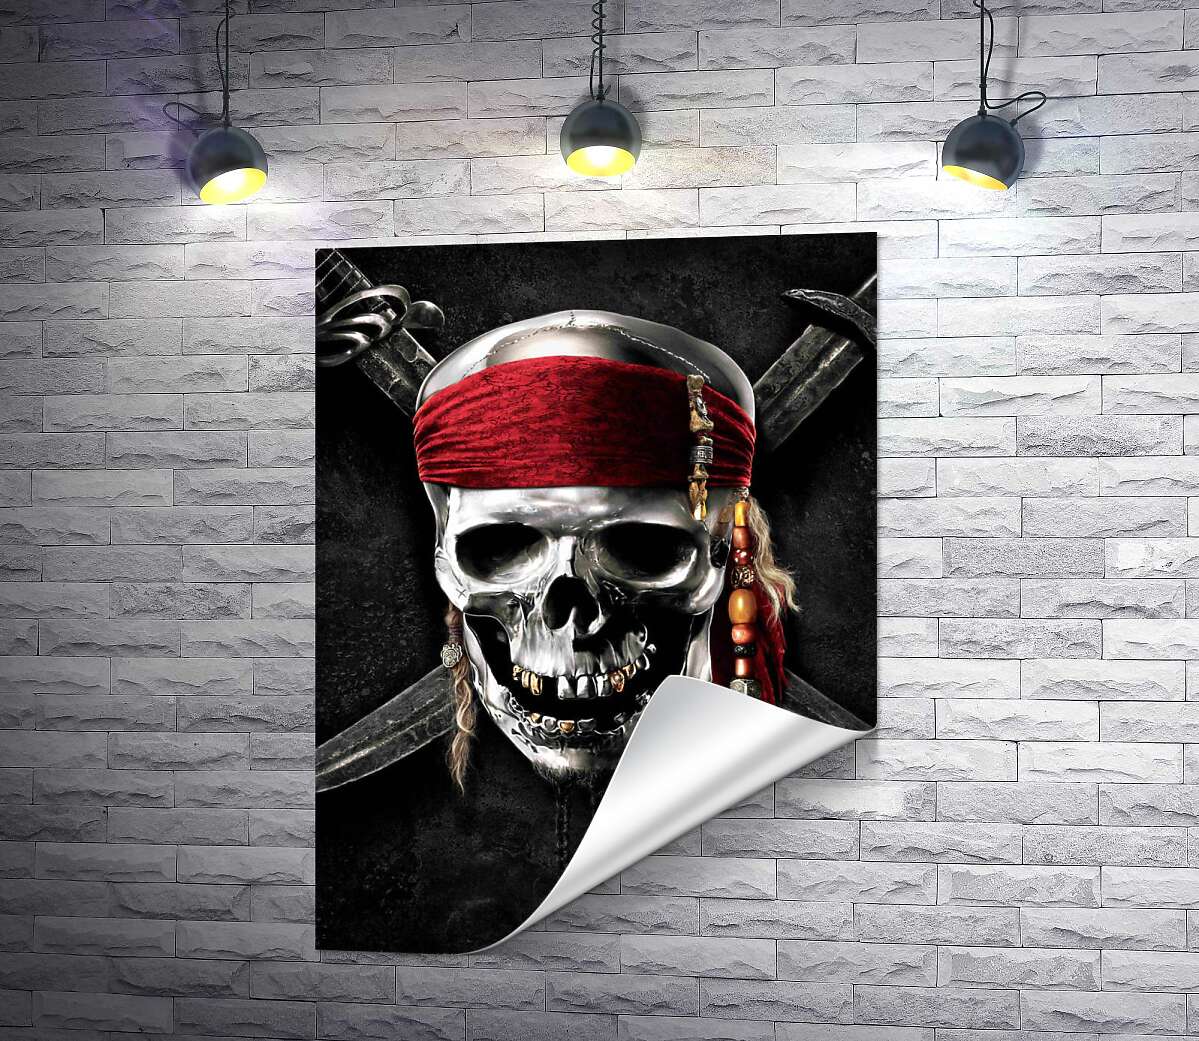 друк Славнозвісний череп Джека Горобця (Jack Sparrow) на постері до фільму "Пірати Карибського моря" (Pirates of the Caribbean)